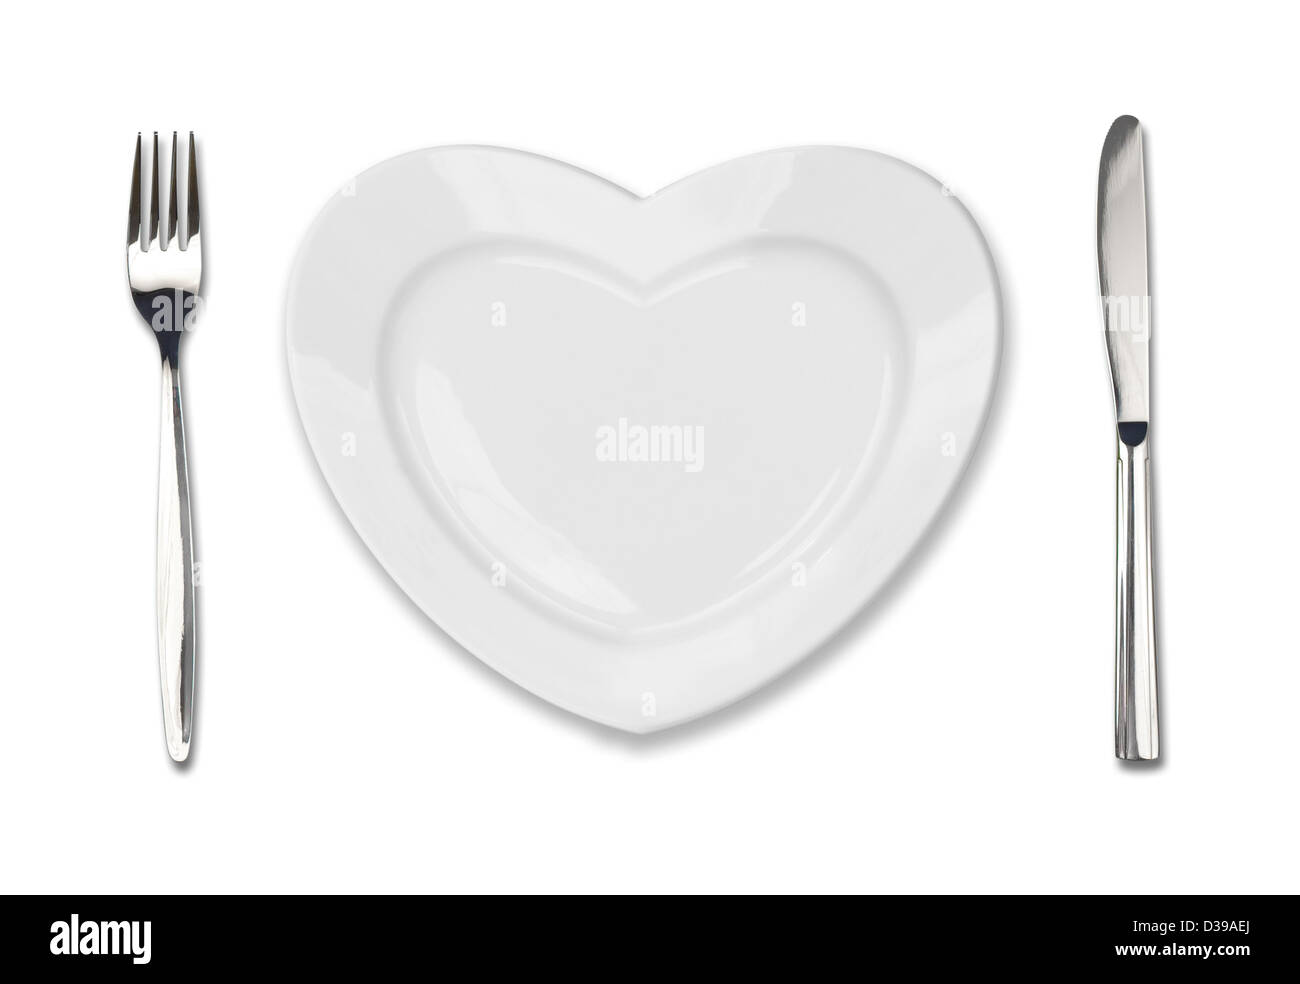 Placa en forma de corazón, cuchillo y tenedor de mesa aislado en blanco Foto de stock